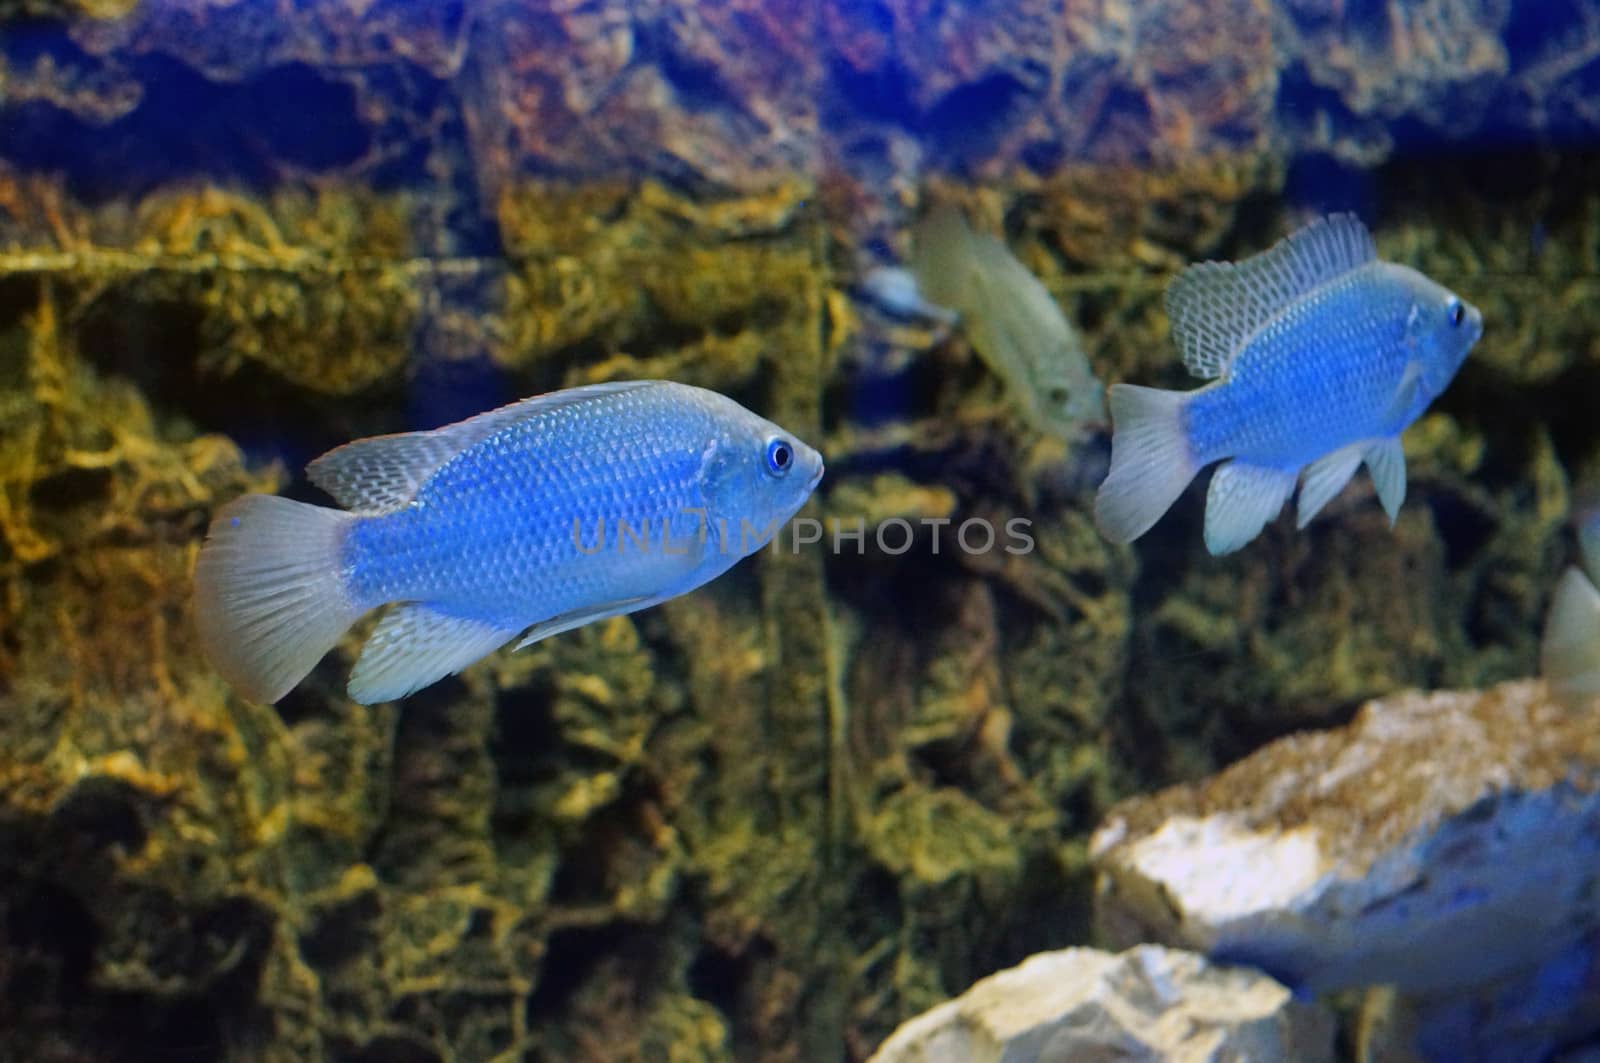 A pair of fish in the aquarium (Cyrtocara moorii)            